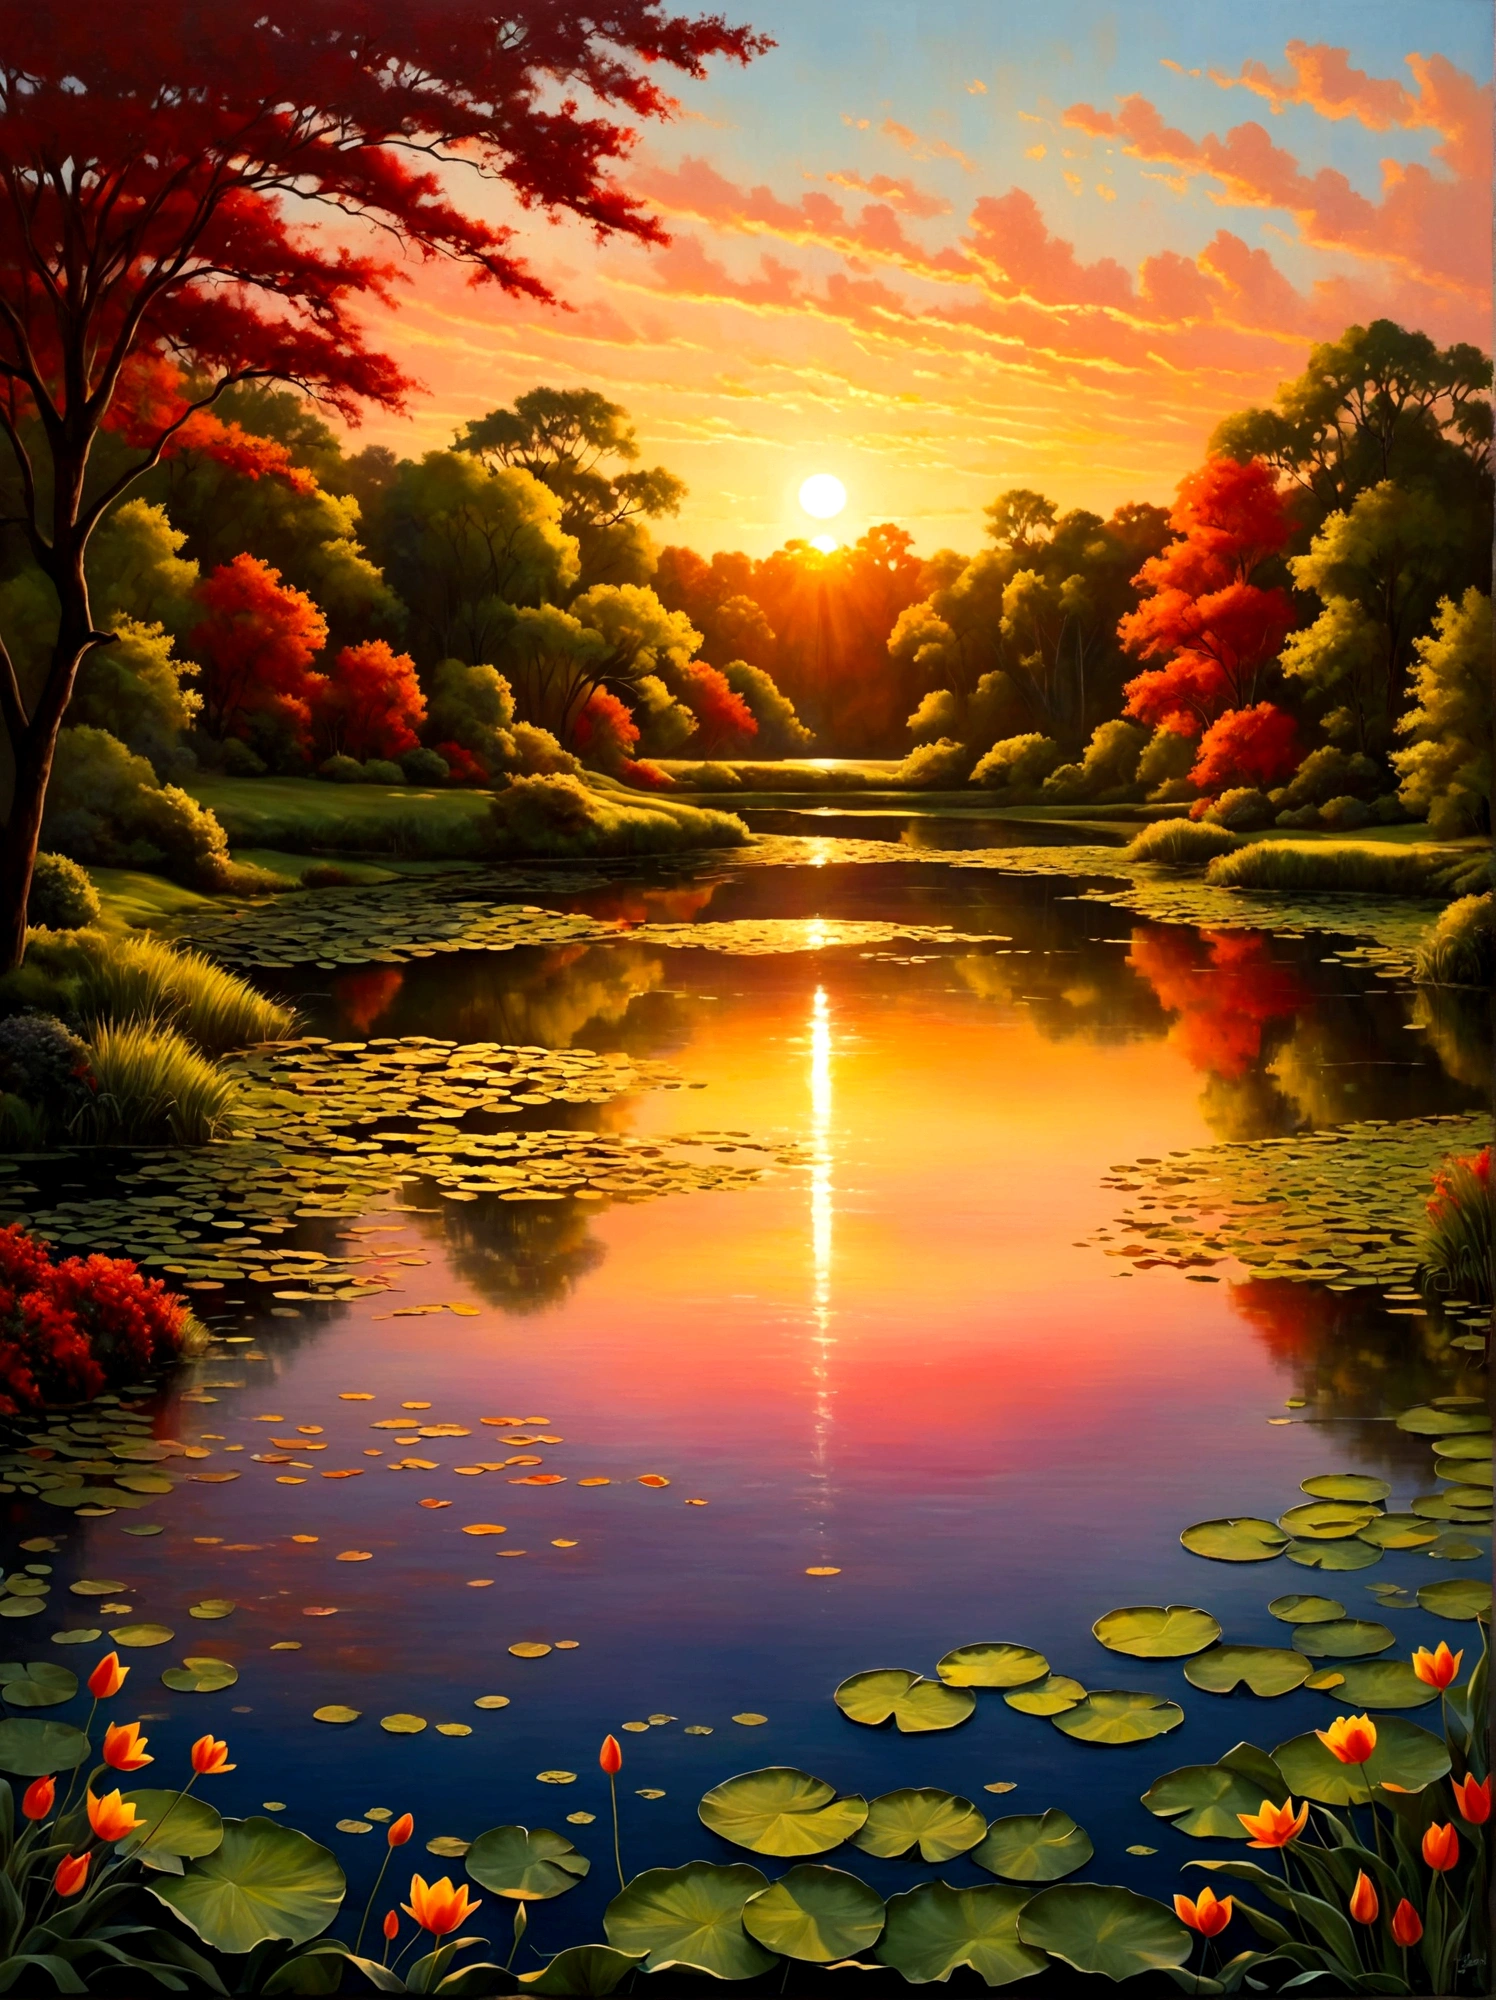 (время восхода солнца:1.6)，Живописная сцена раннего утра, показывающая сияющее сияние восхода солнца, плывущее по небу.. Свет солнца только выглядывает из-за горизонта, отбрасывающий яркие оттенки оранжевого, красный, желтый, и розовый. На переднем плане, спокойное озеро отражает потрясающие цвета неба. Его спокойная поверхность почти не нарушена., за исключением нескольких тонких волн, которые добавляют очарования этой сцене.. Озеро окружают пышные деревья и зелень., все еще в тени из-за отступающей темноты, но начинает улавливать живое сияние наступающего дня. На изображении запечатлен красивый переход от ночи к рассвету., Перспектива сделана под широким углом, подчеркивая огромный простор захватывающего дух пейзажа, наполненного природными элементами., Изображение должно вызывать ощущение драматизма и масштабности за счет эффективного использования света и тени..